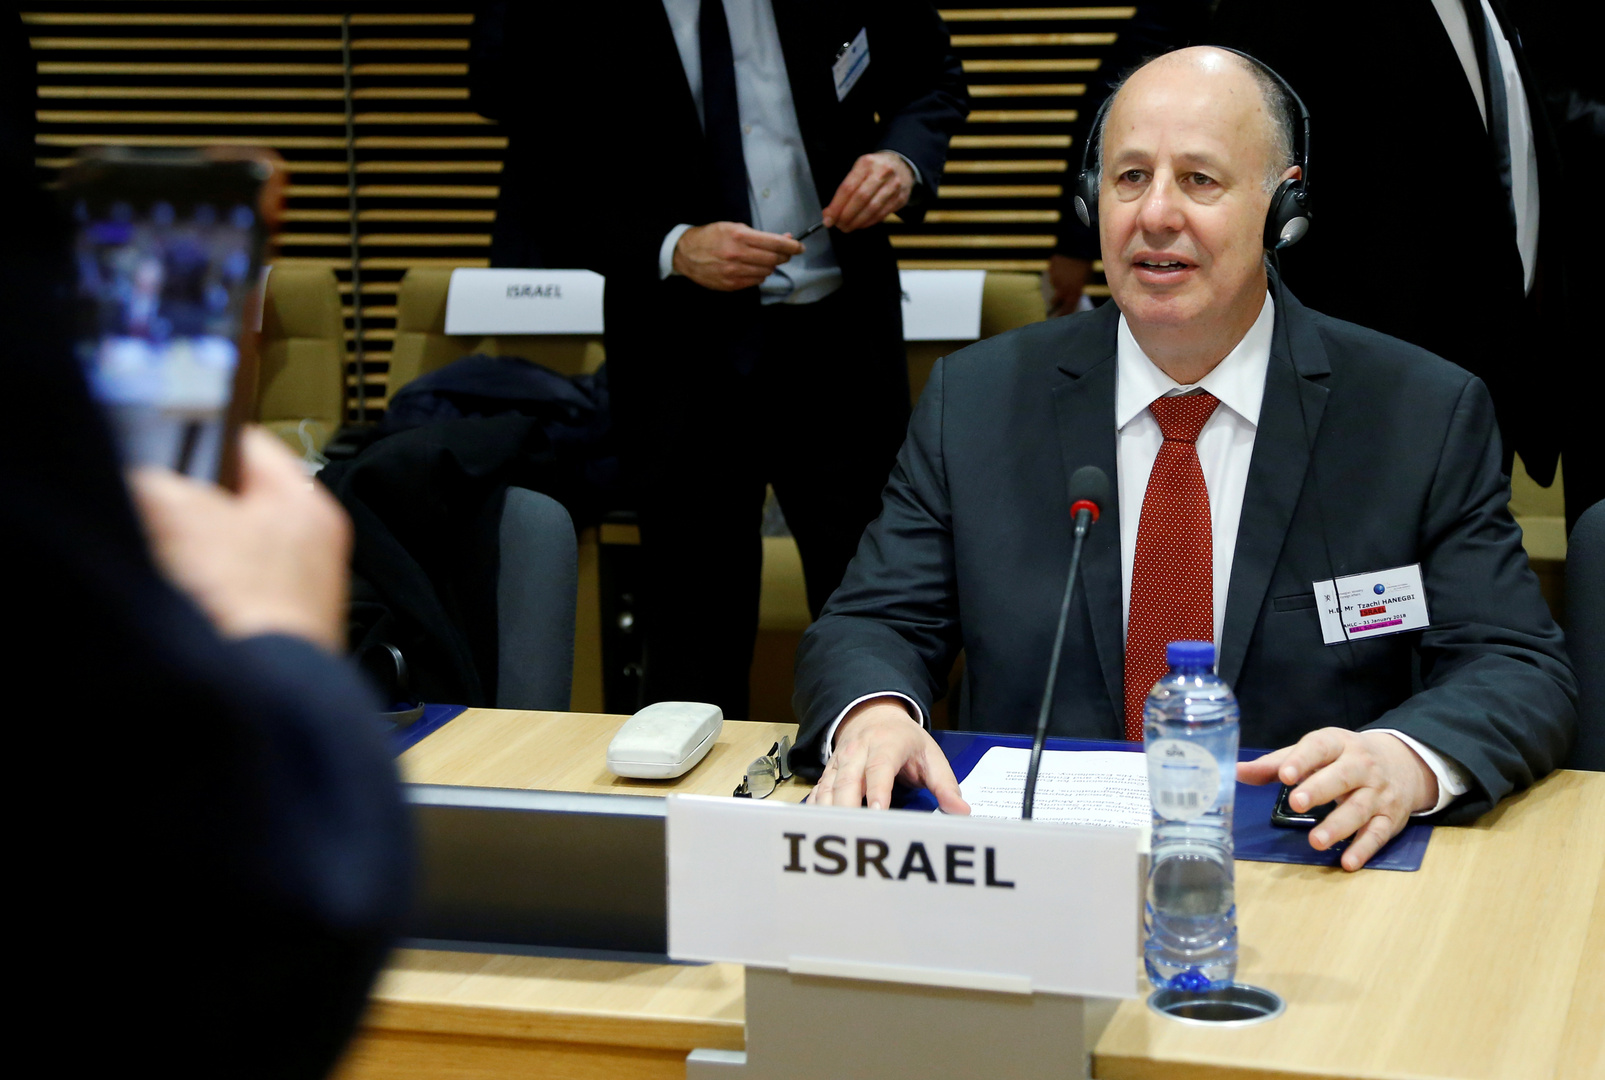 وزير إسرائيلي: واشنطن لن تهاجم إيران وسنضطر للعمل بشكل مستقل لإزالة الخطر